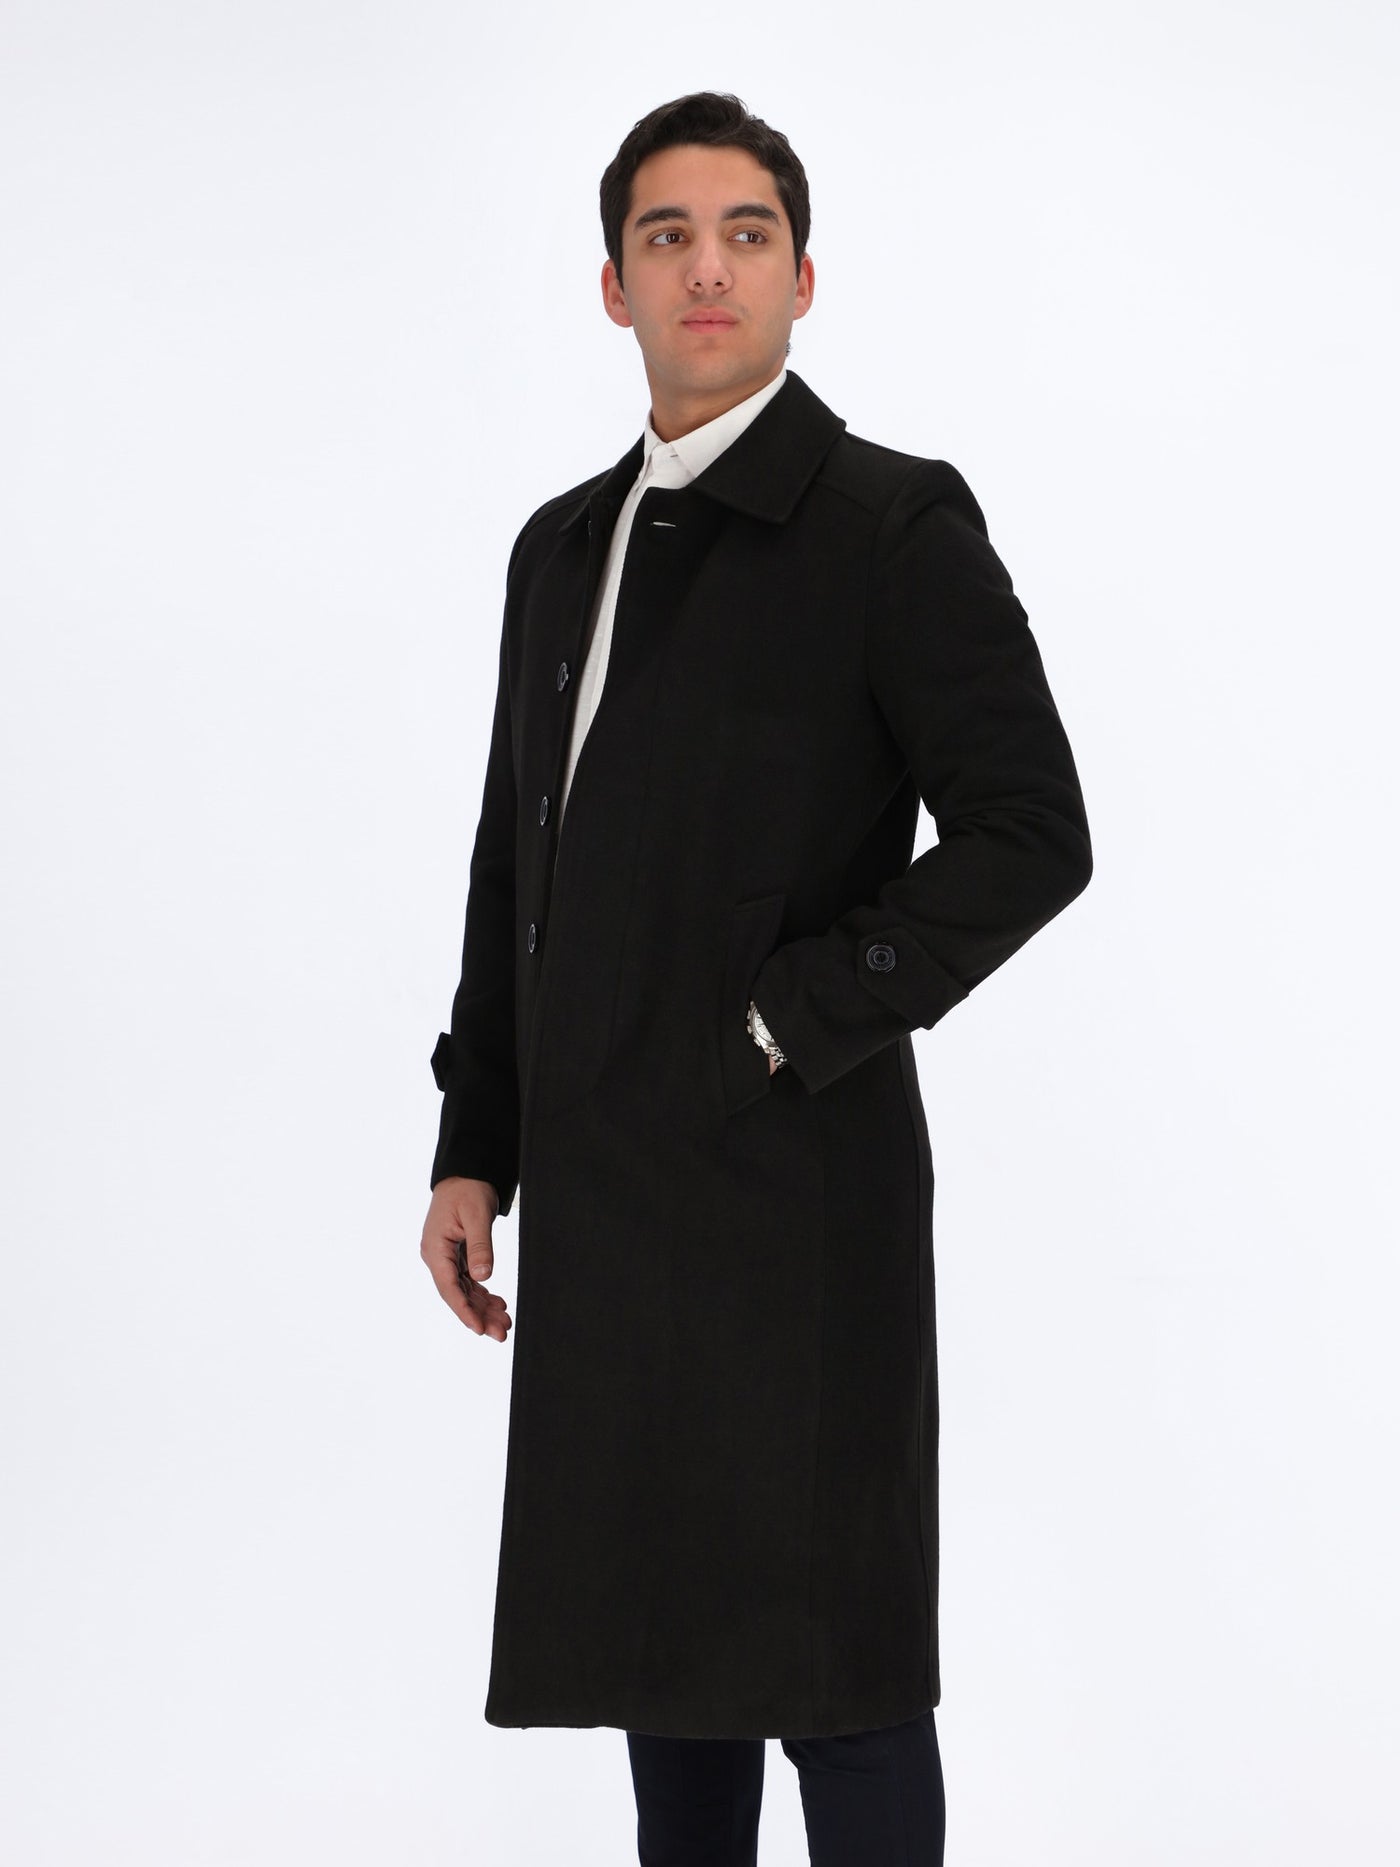 Men's Casual Long Coat